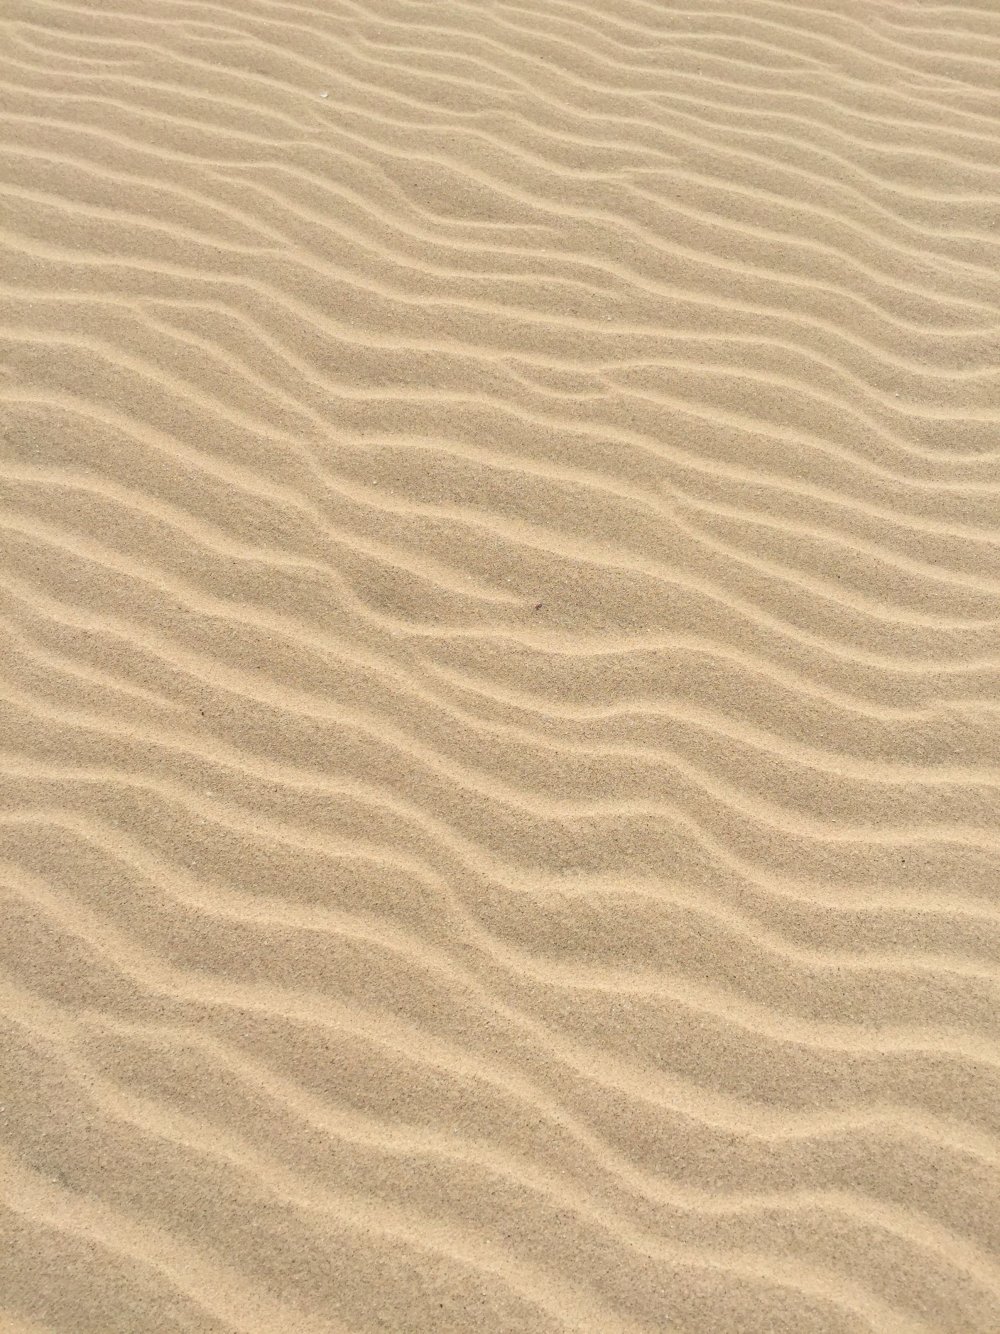 Песок фактура